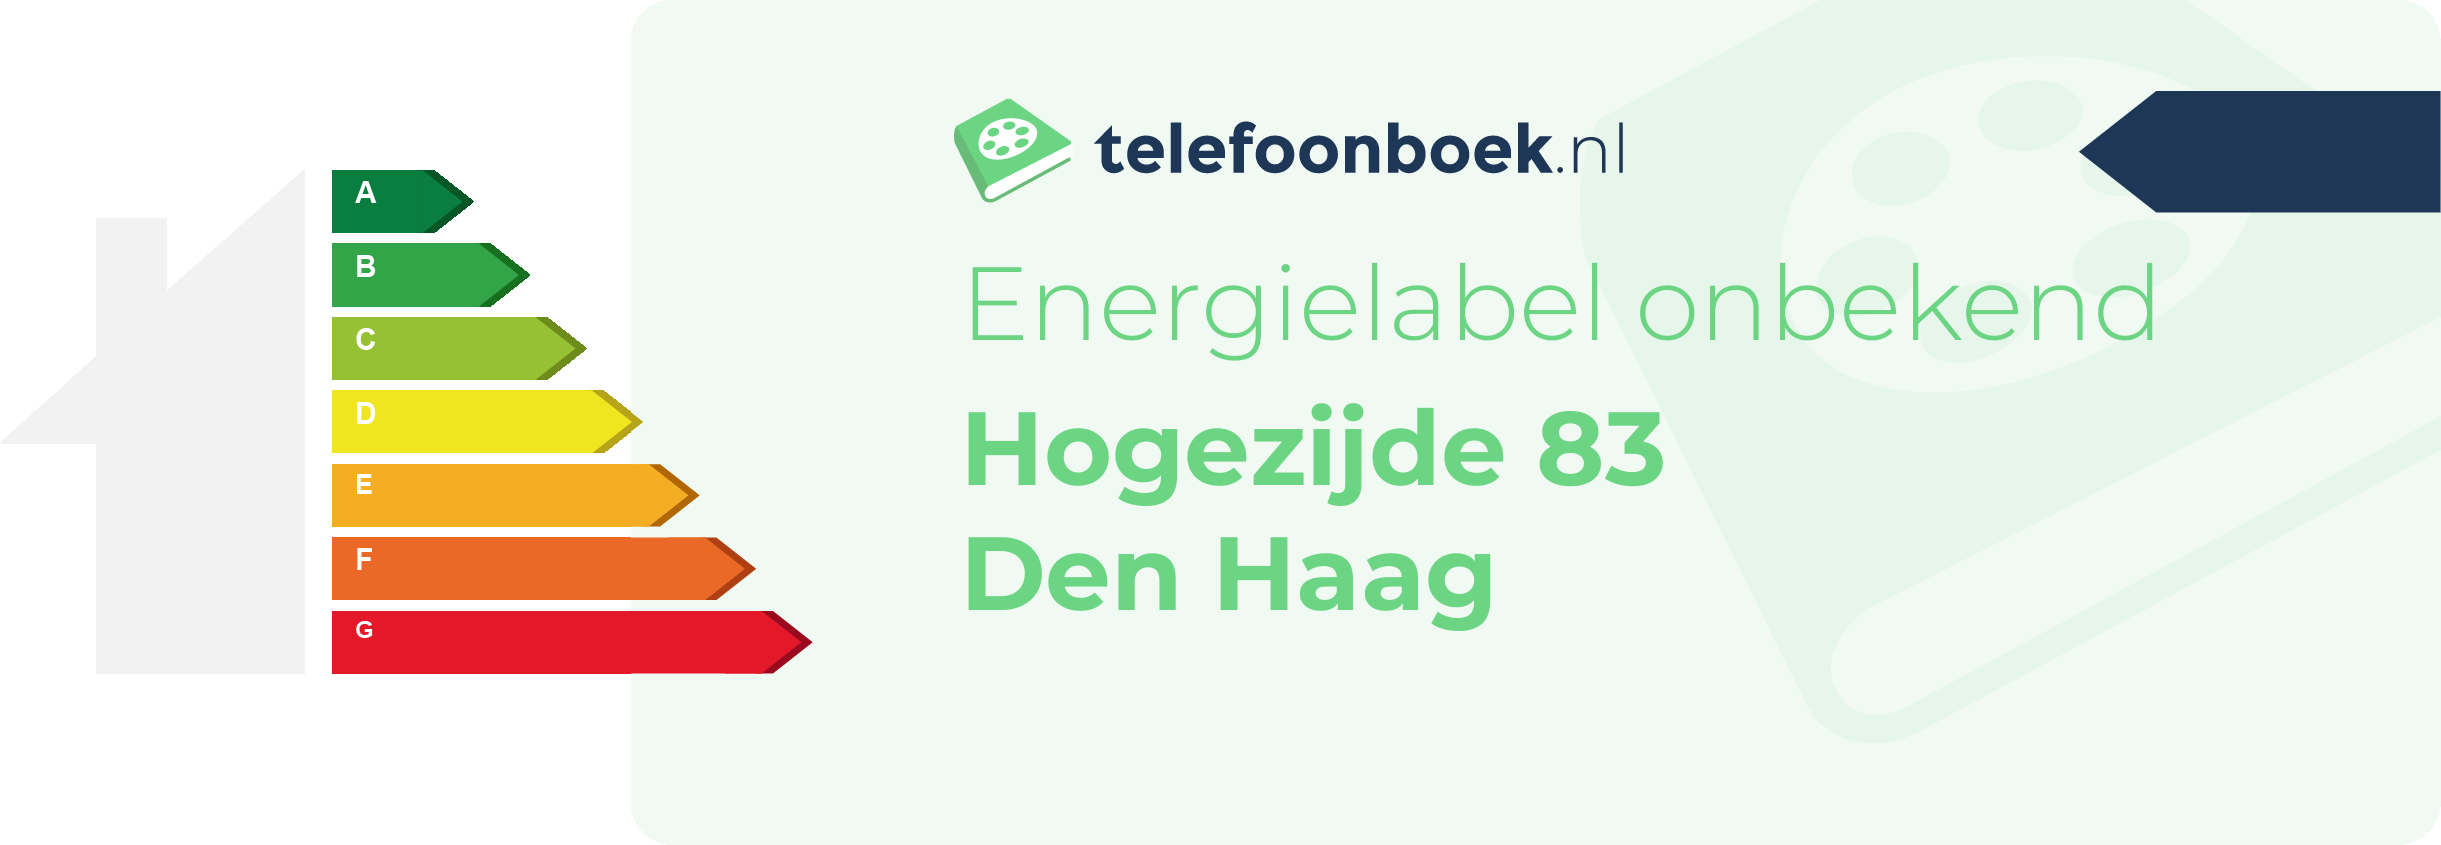 Energielabel Hogezijde 83 Den Haag